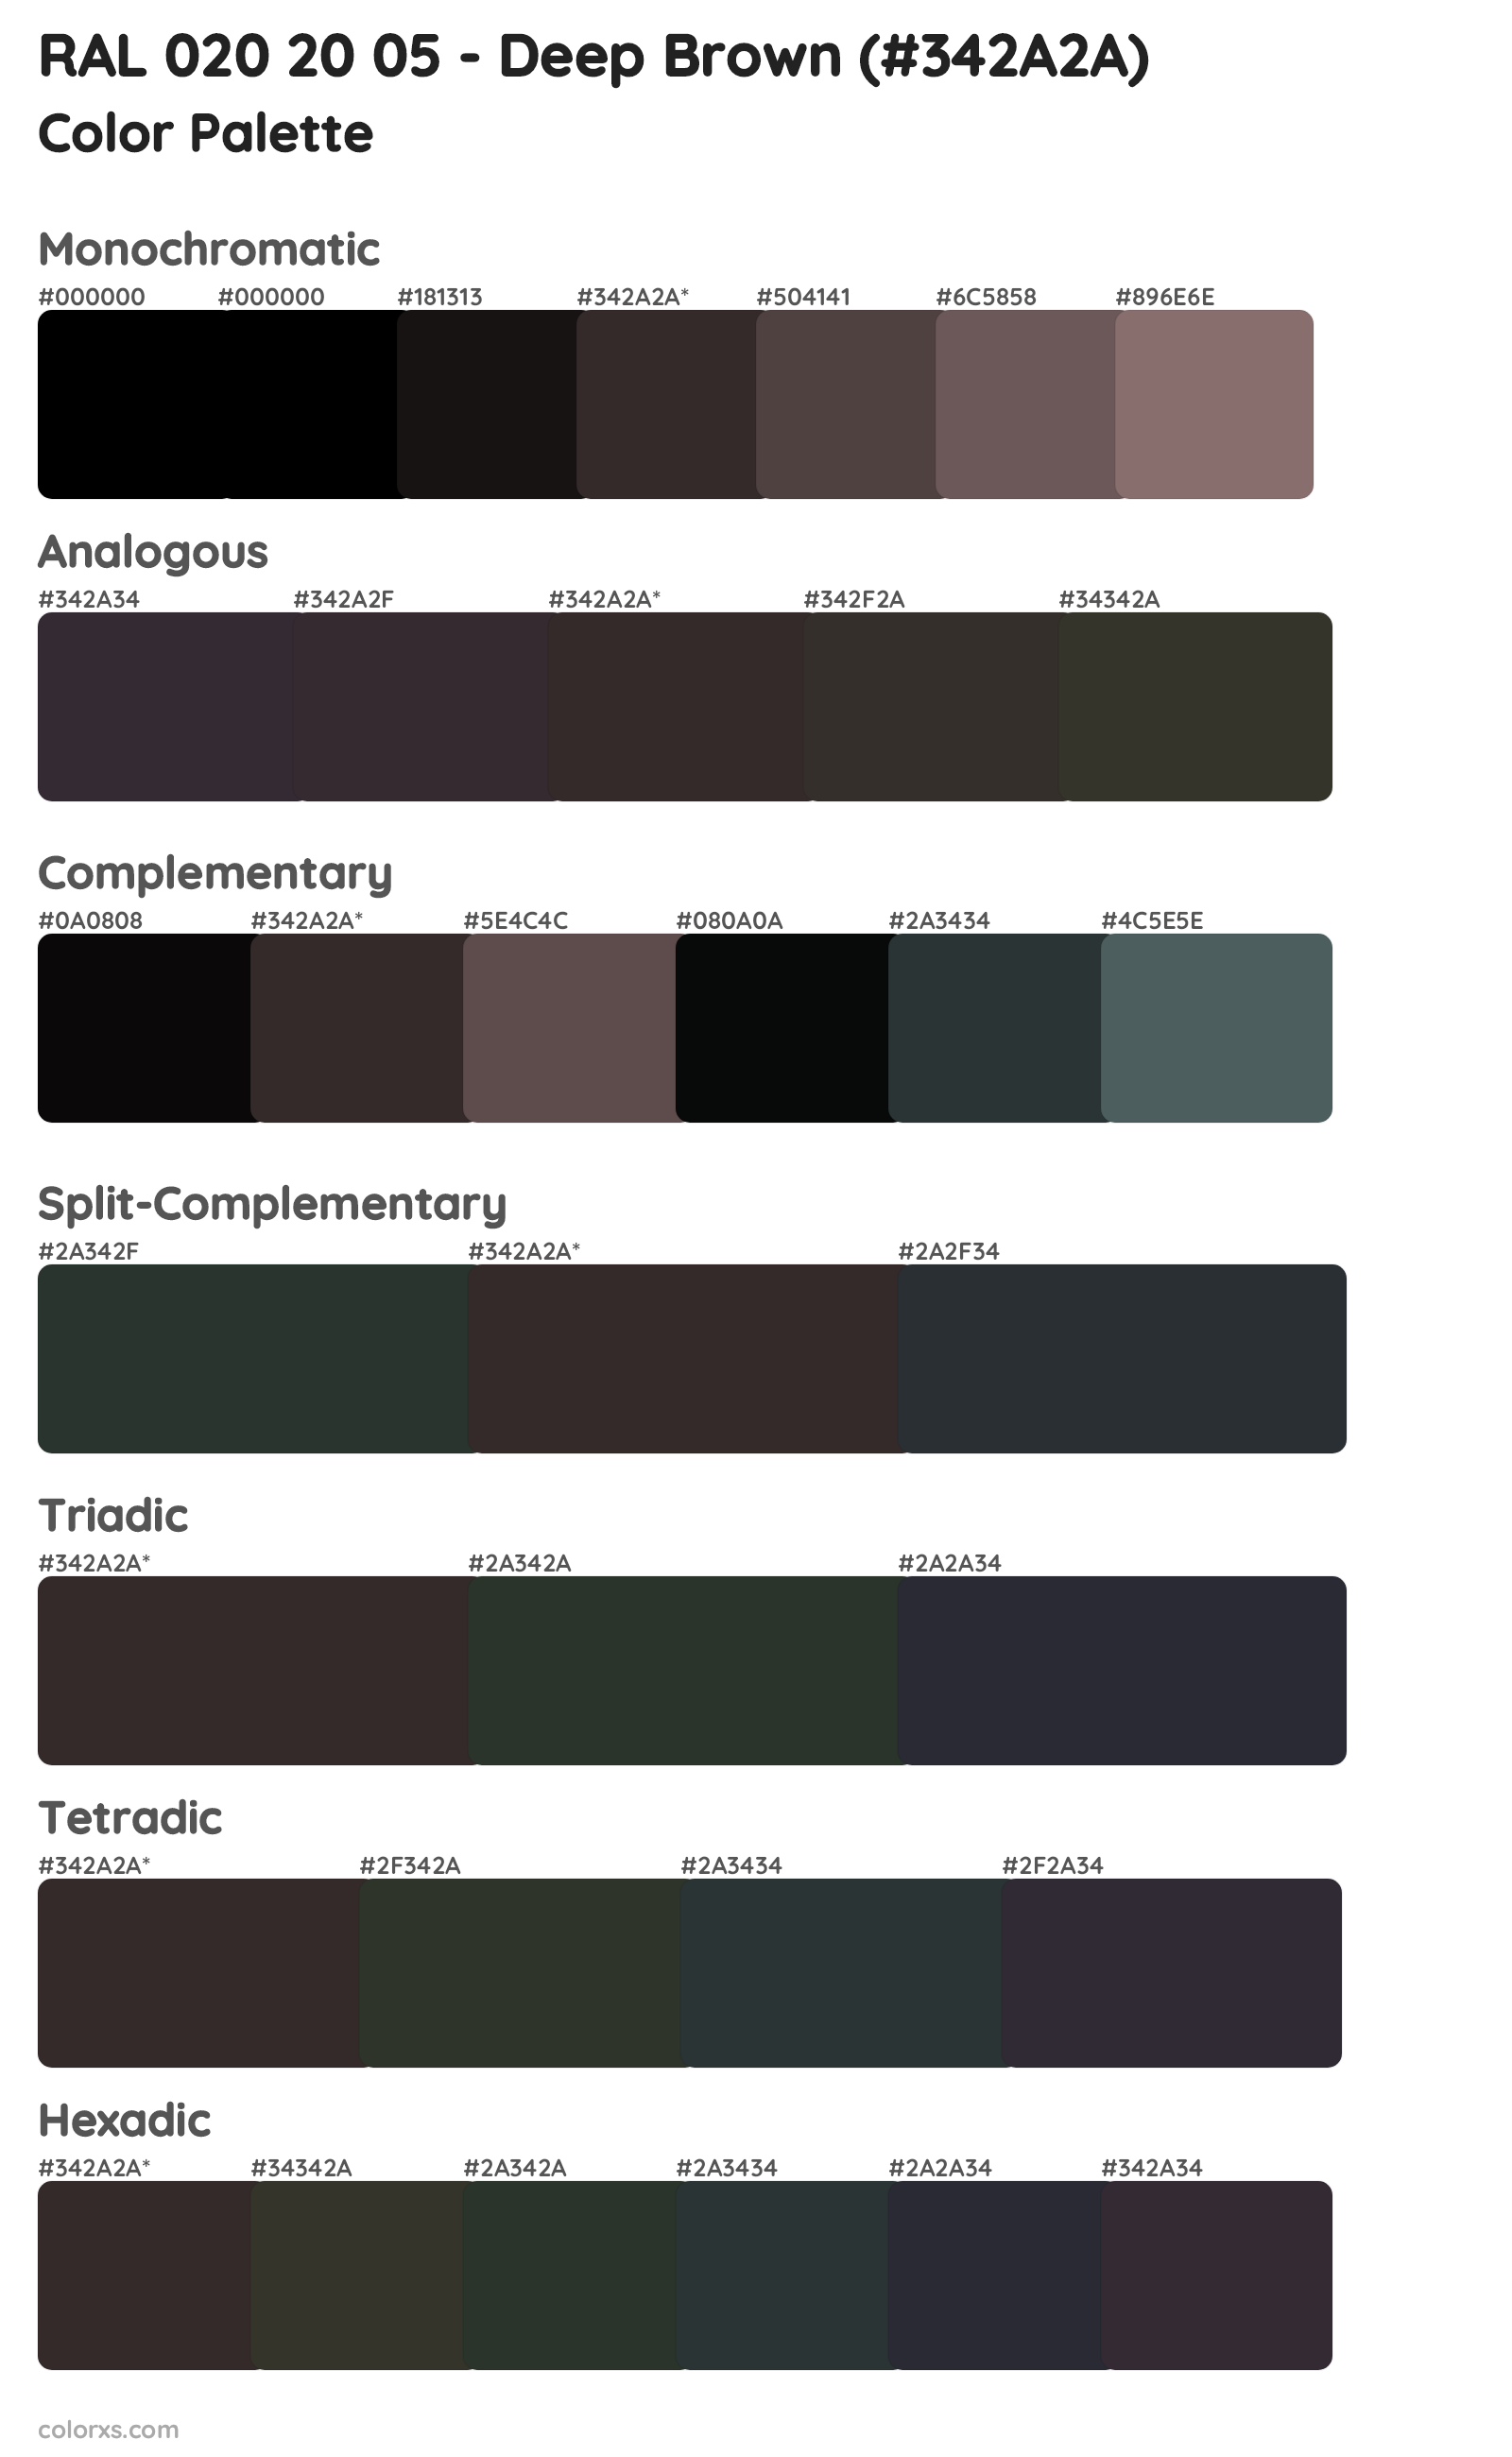 RAL 020 20 05 - Deep Brown Color Scheme Palettes